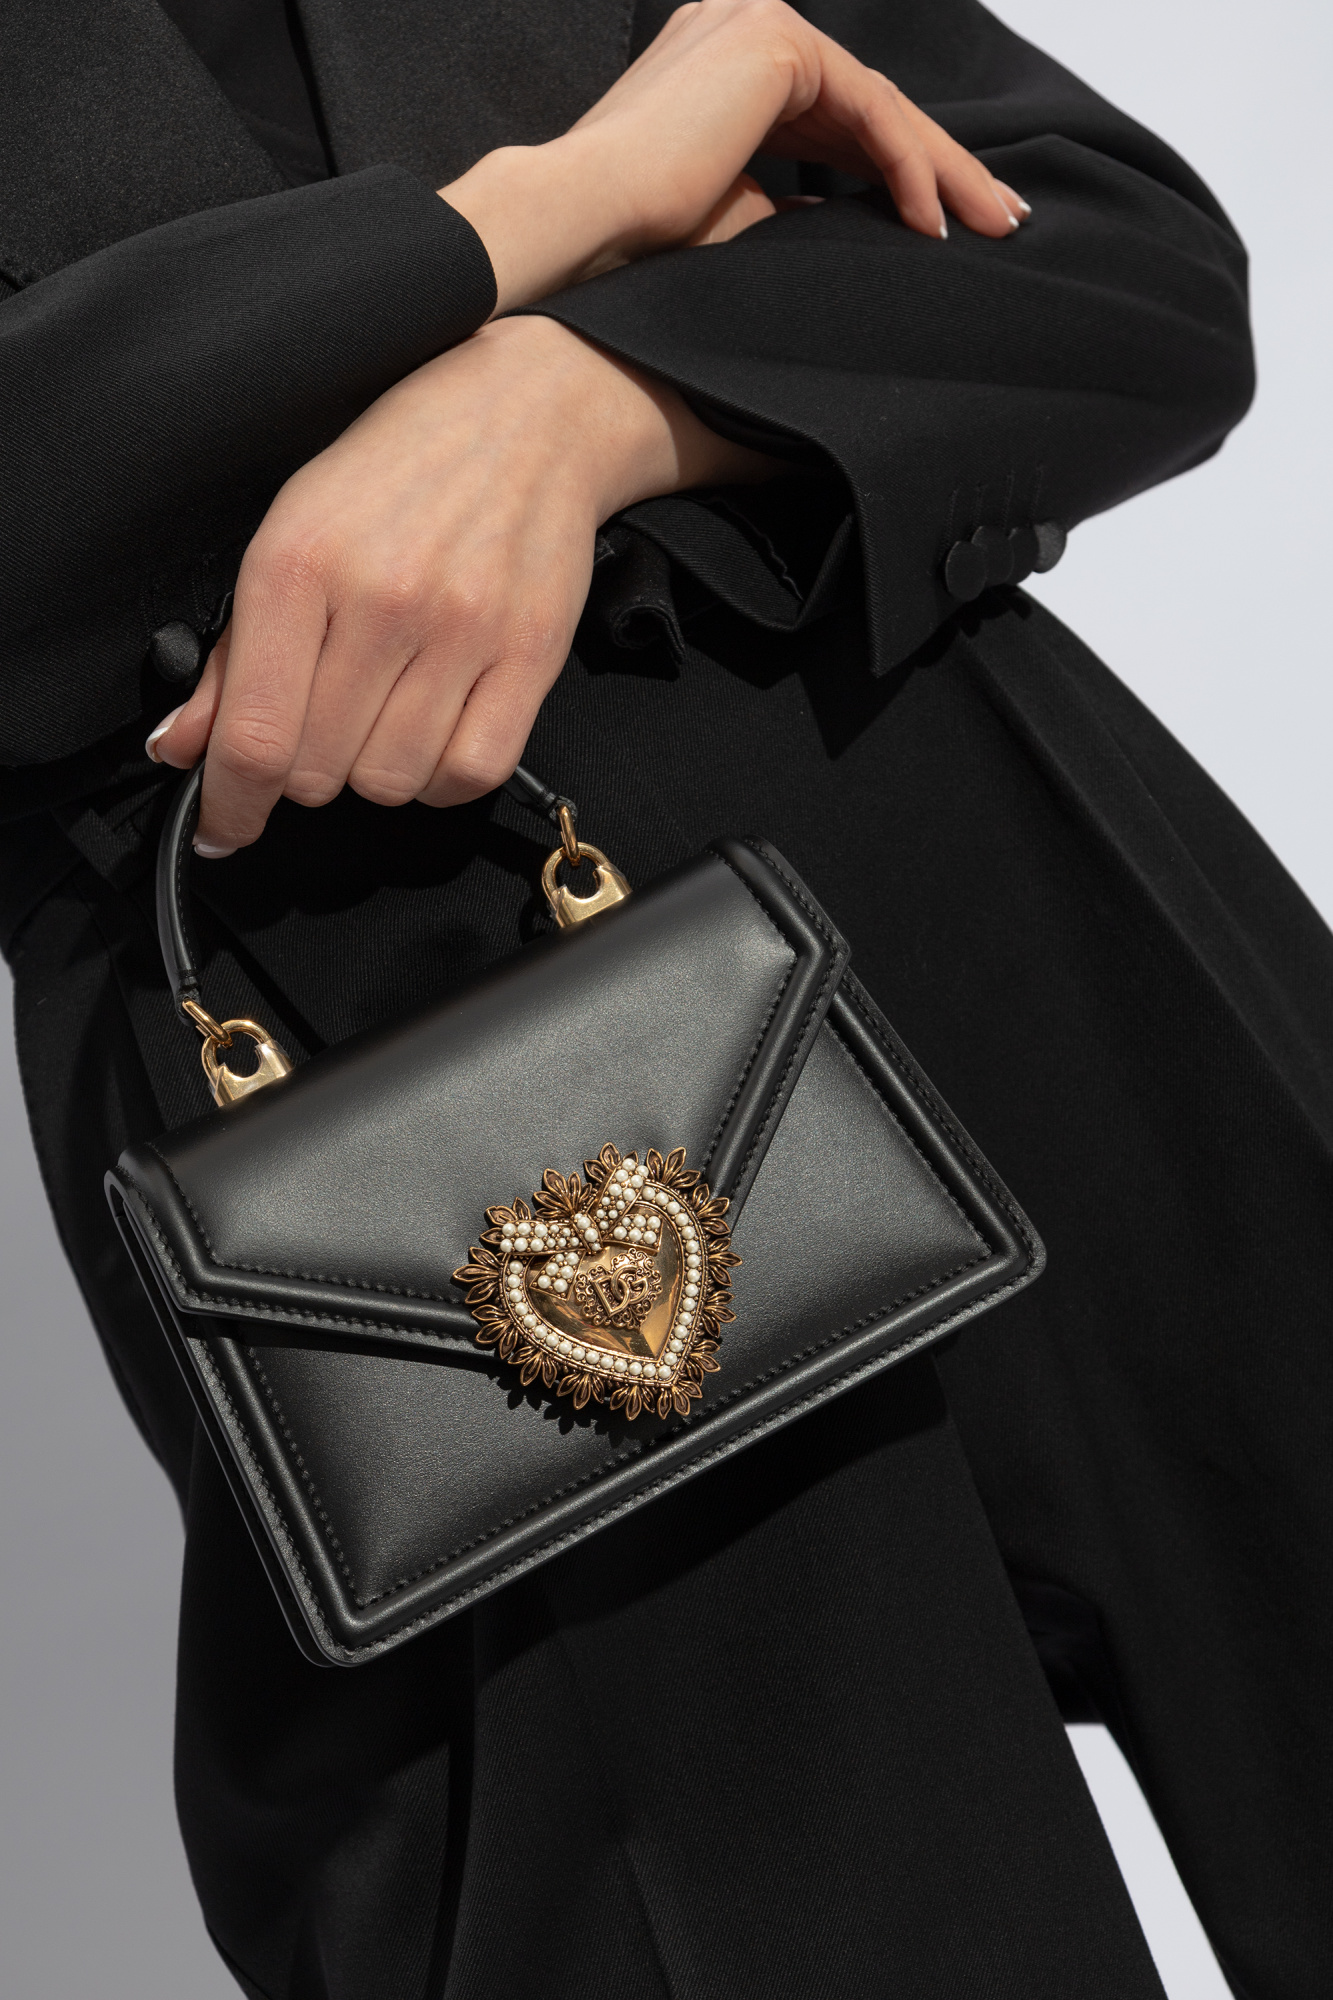 Dolce & Gabbana long-sleeved cotton shirt ‘Devotion’ shoulder bag